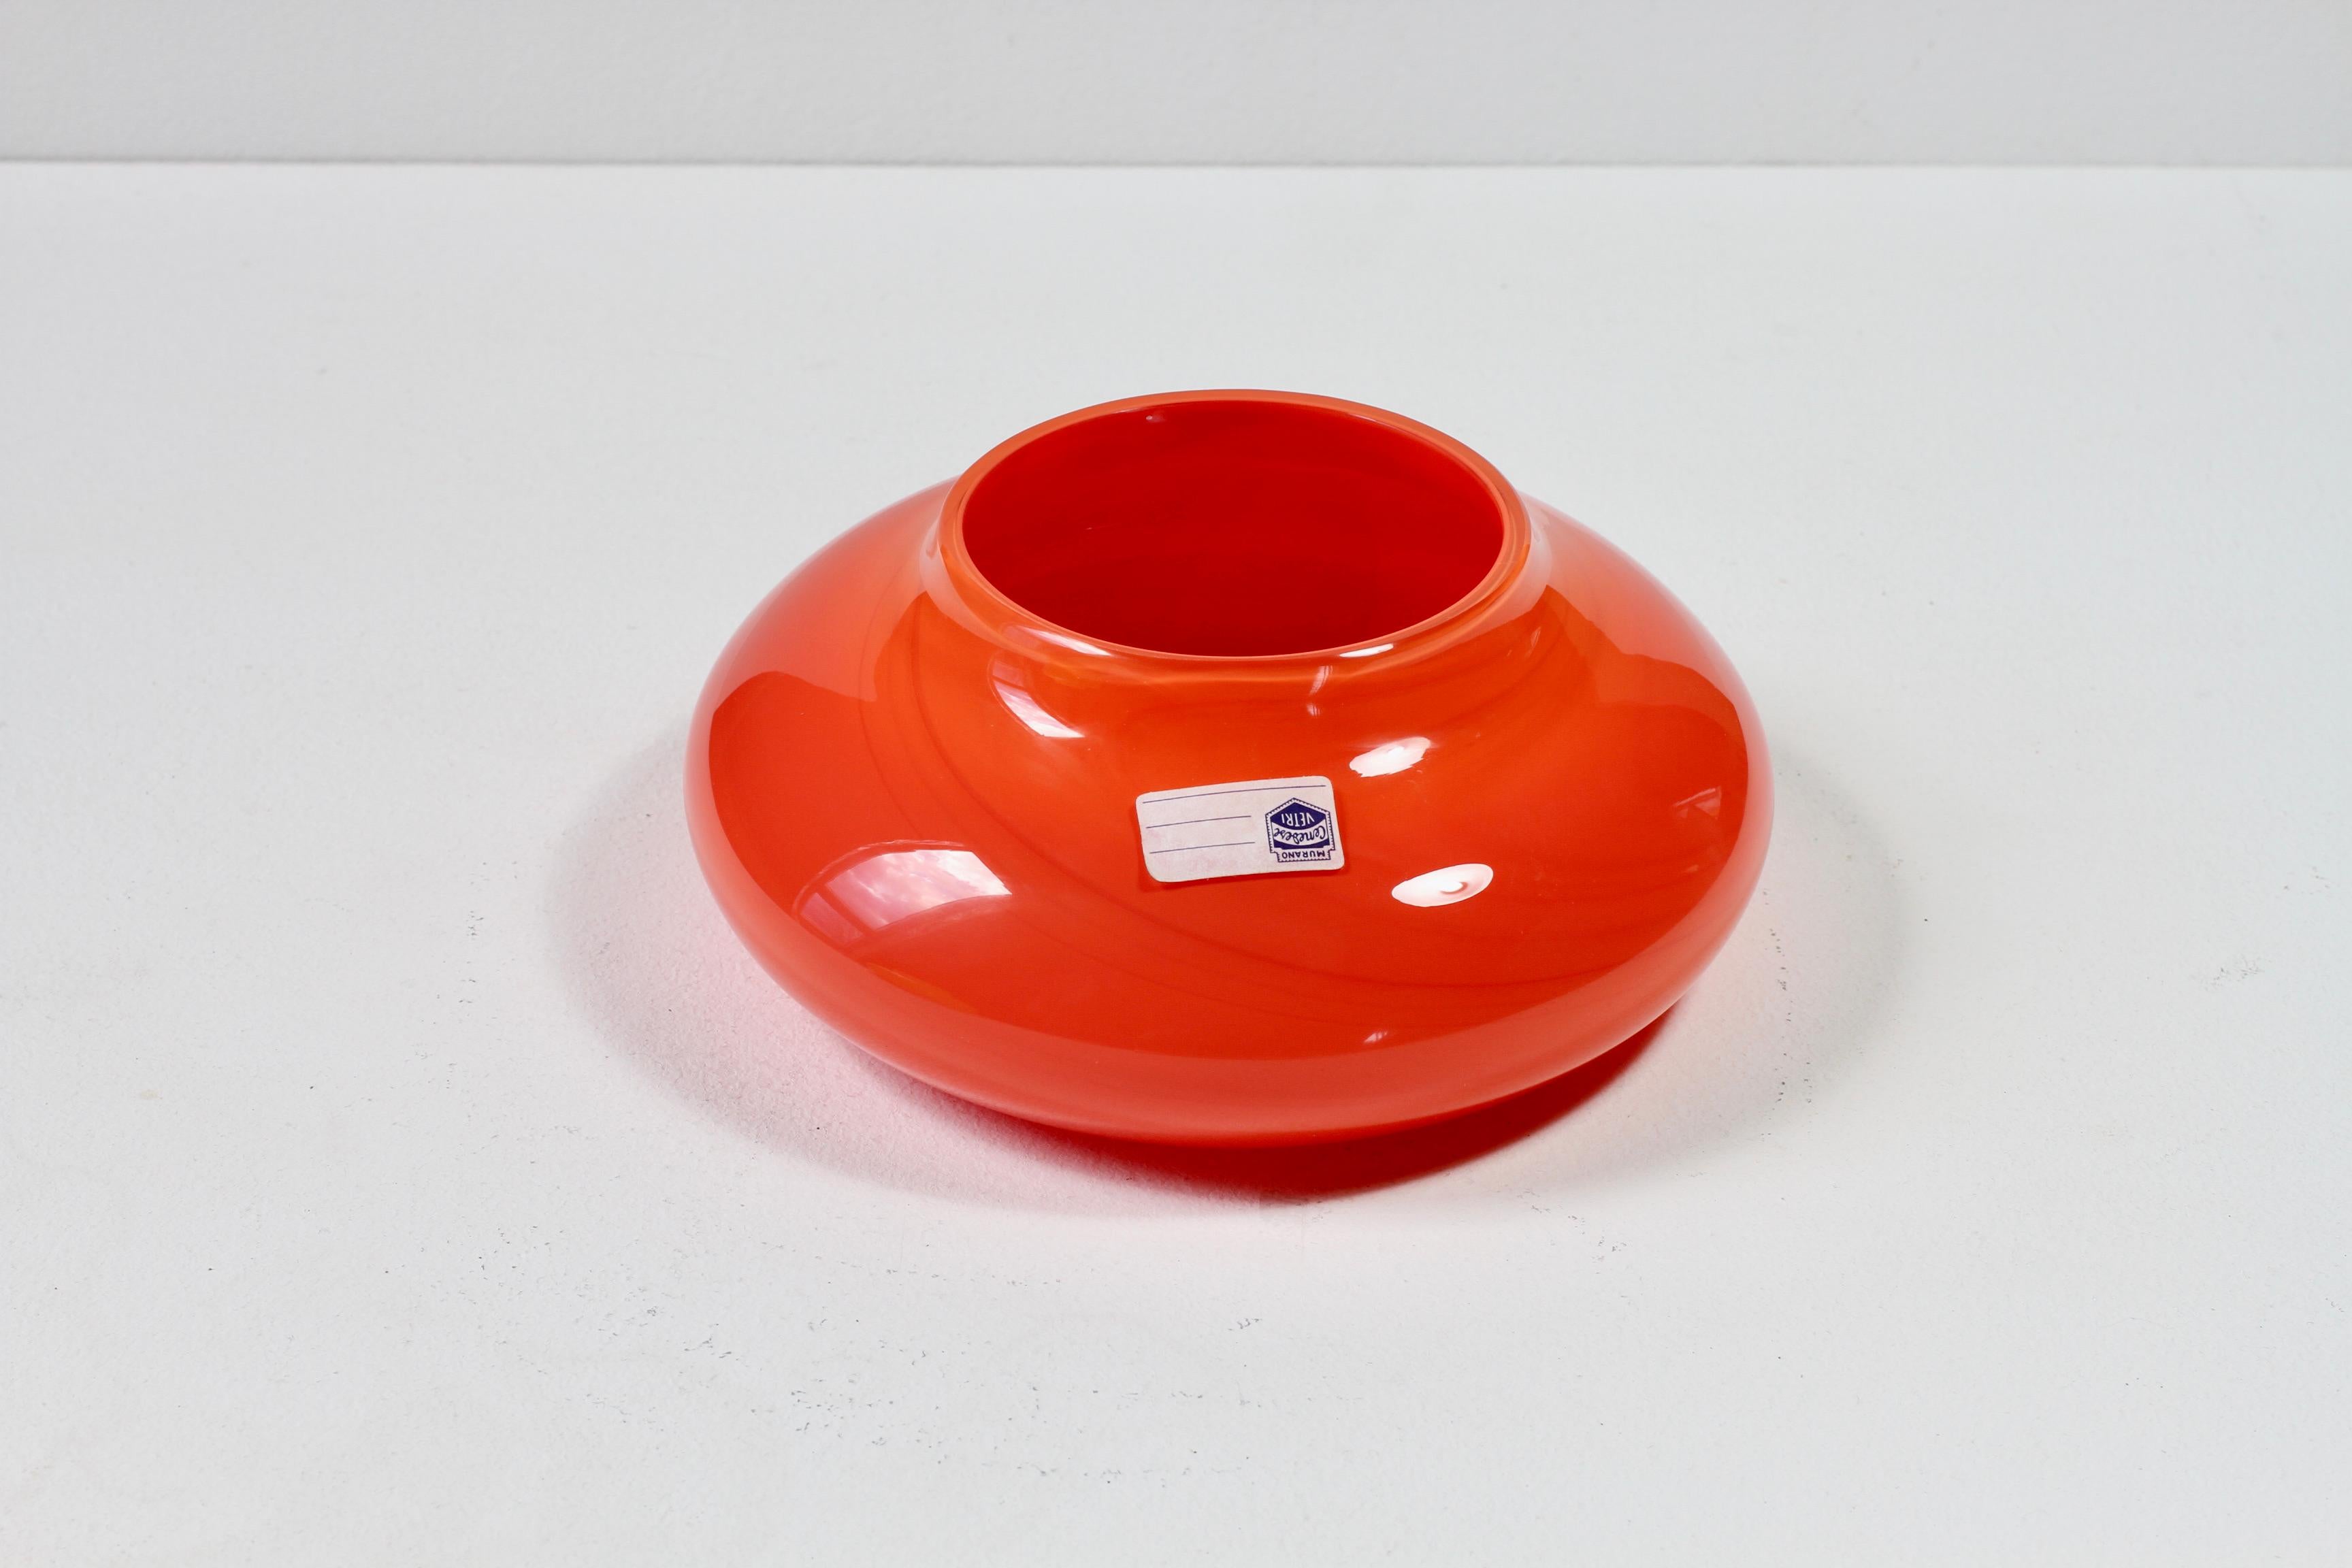 Merveilleux bol ou vase en verre vintage du milieu du siècle, de couleur rouge vif, attribué à Ermanno Nason pour Cenedese de Murano, Italie. 

Can peut être utilisé comme bol, plat, vide-poche, cendrier ou comme vase lorsqu'il est retourné - idéal